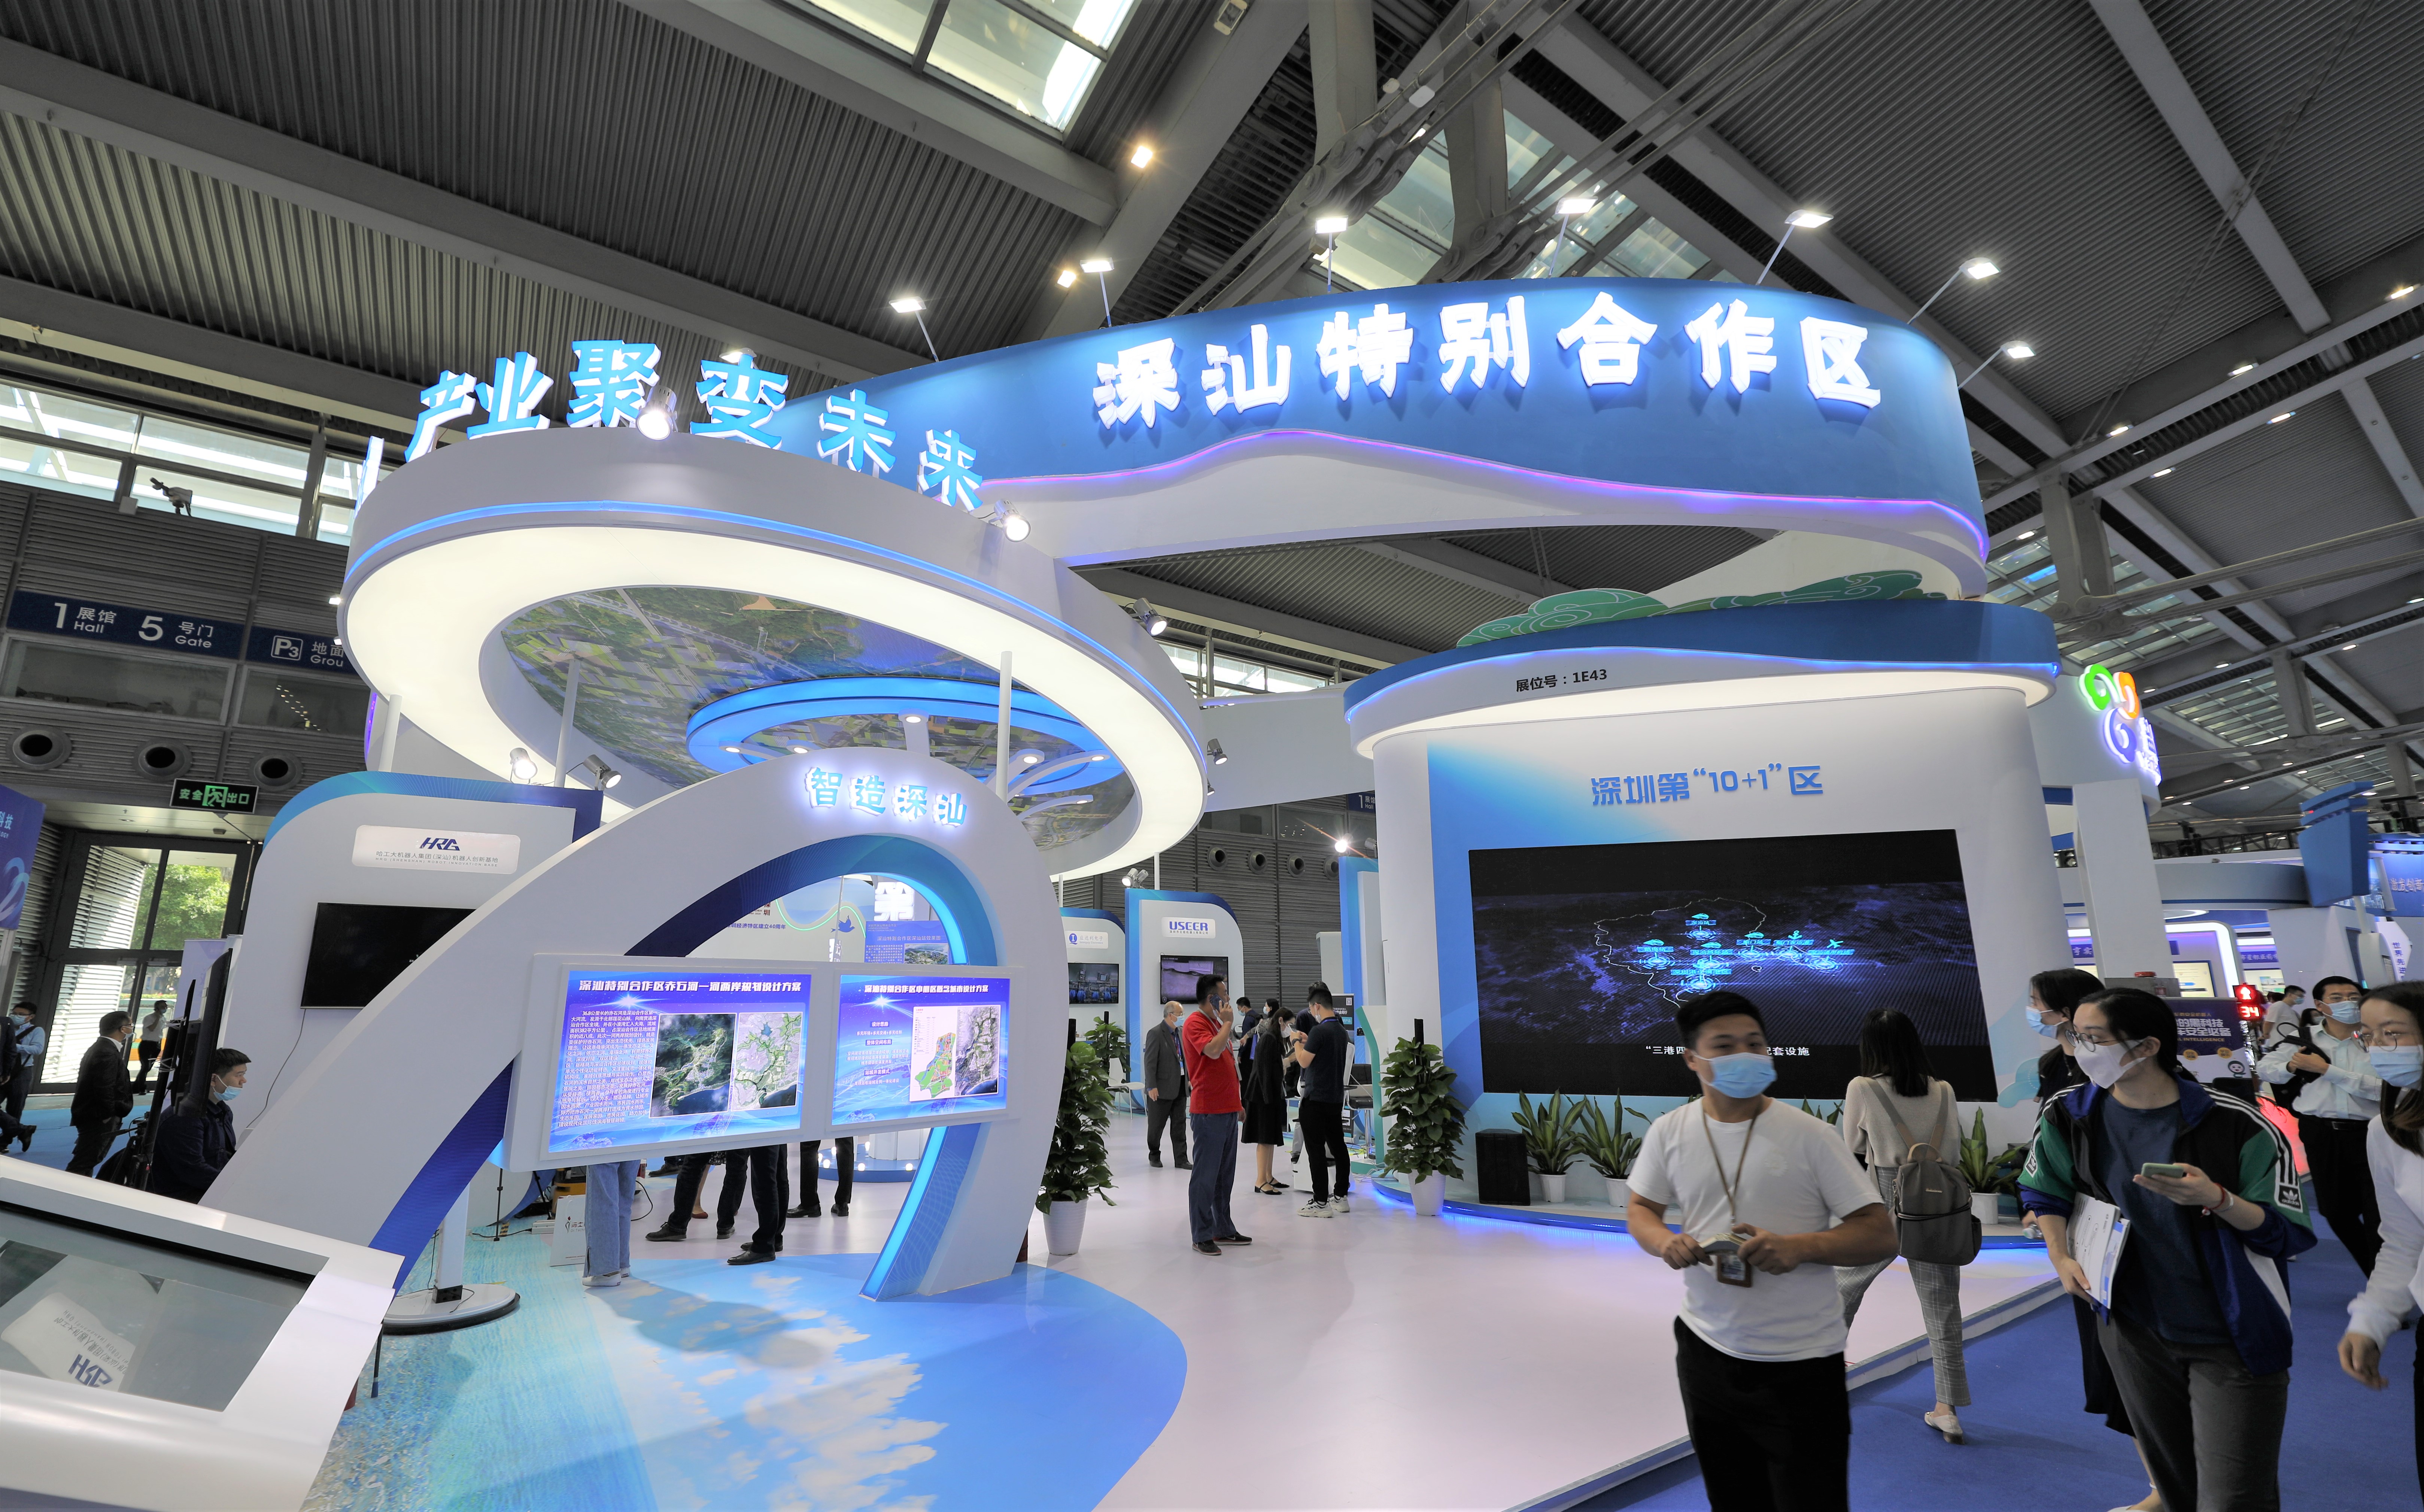 第二十二届中国国际高新技术成果交易会(简称高交会)在深圳会展中心